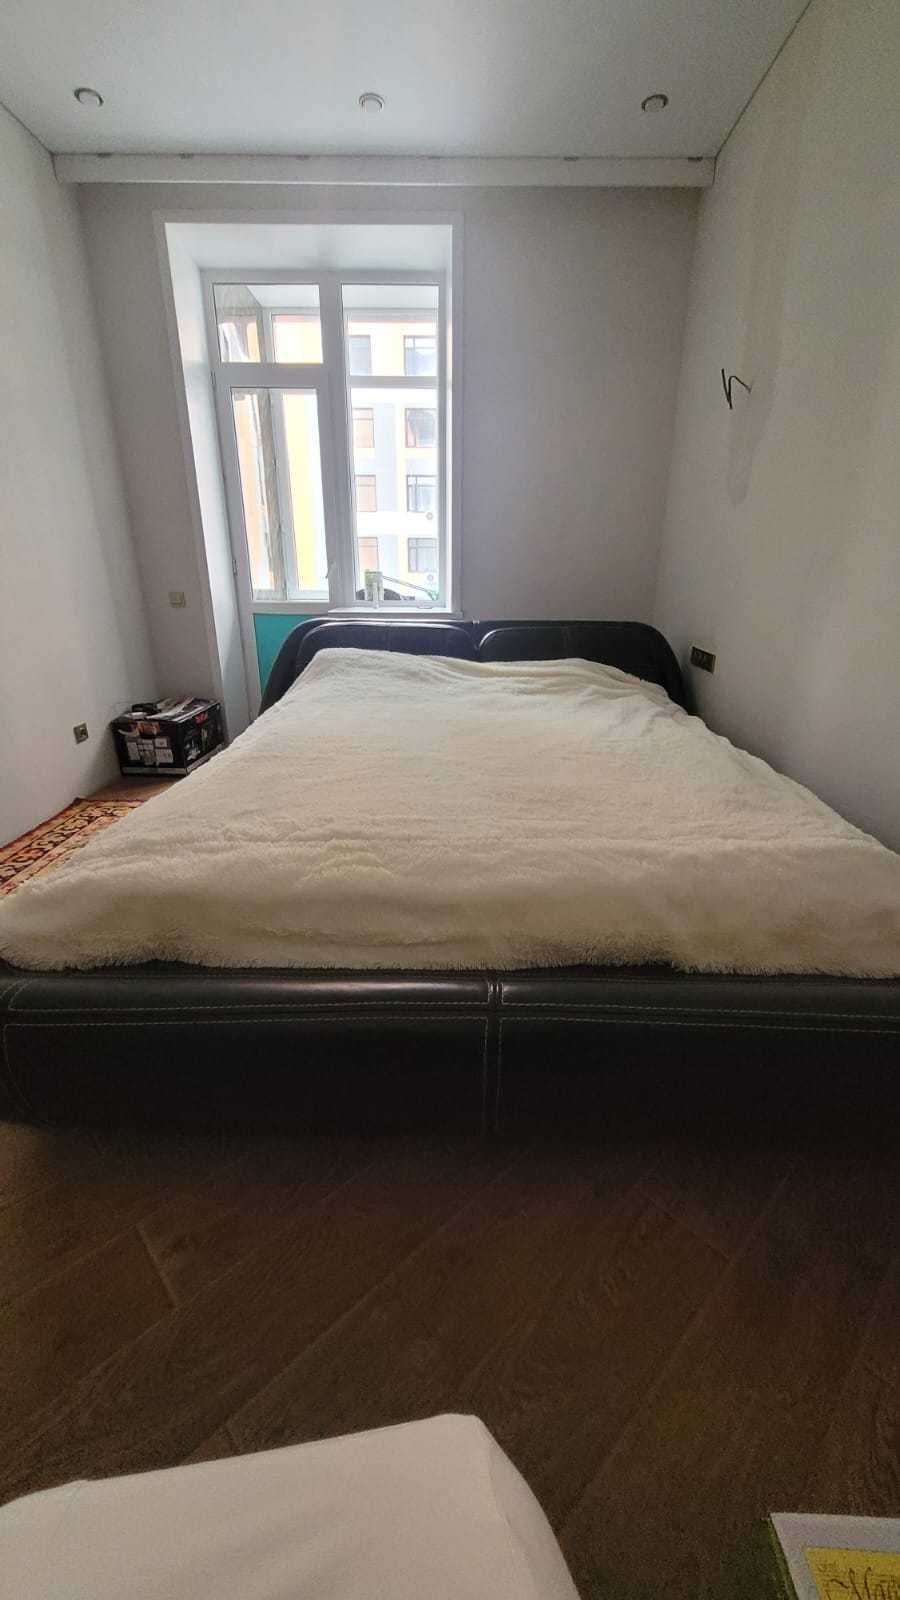 Кровать двухспальная кожаная  кровать  с тумбочками